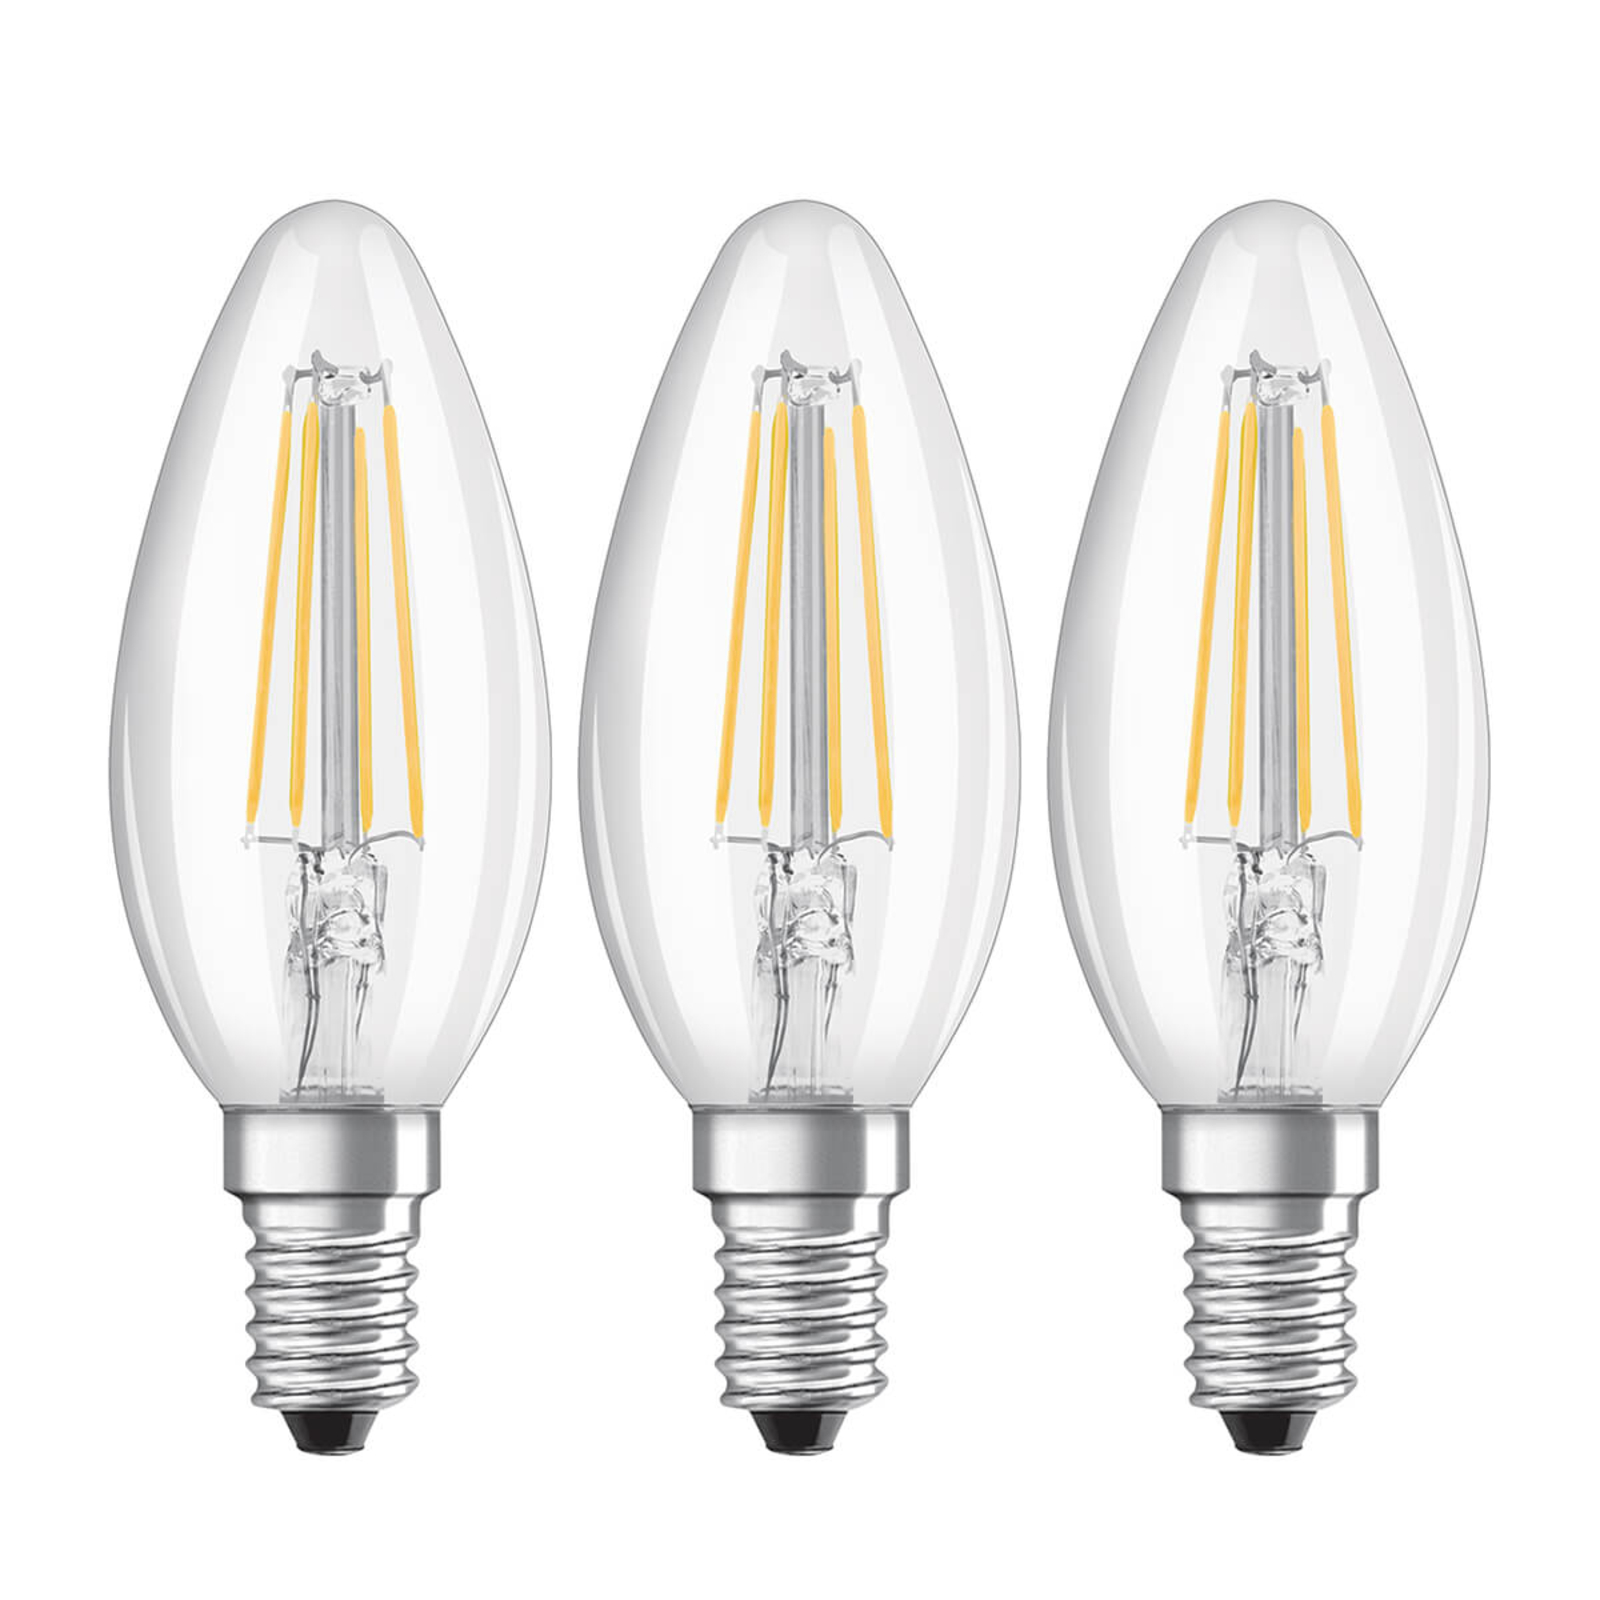 LED-filamentlampa E14 4W, varmvit, 3-pack